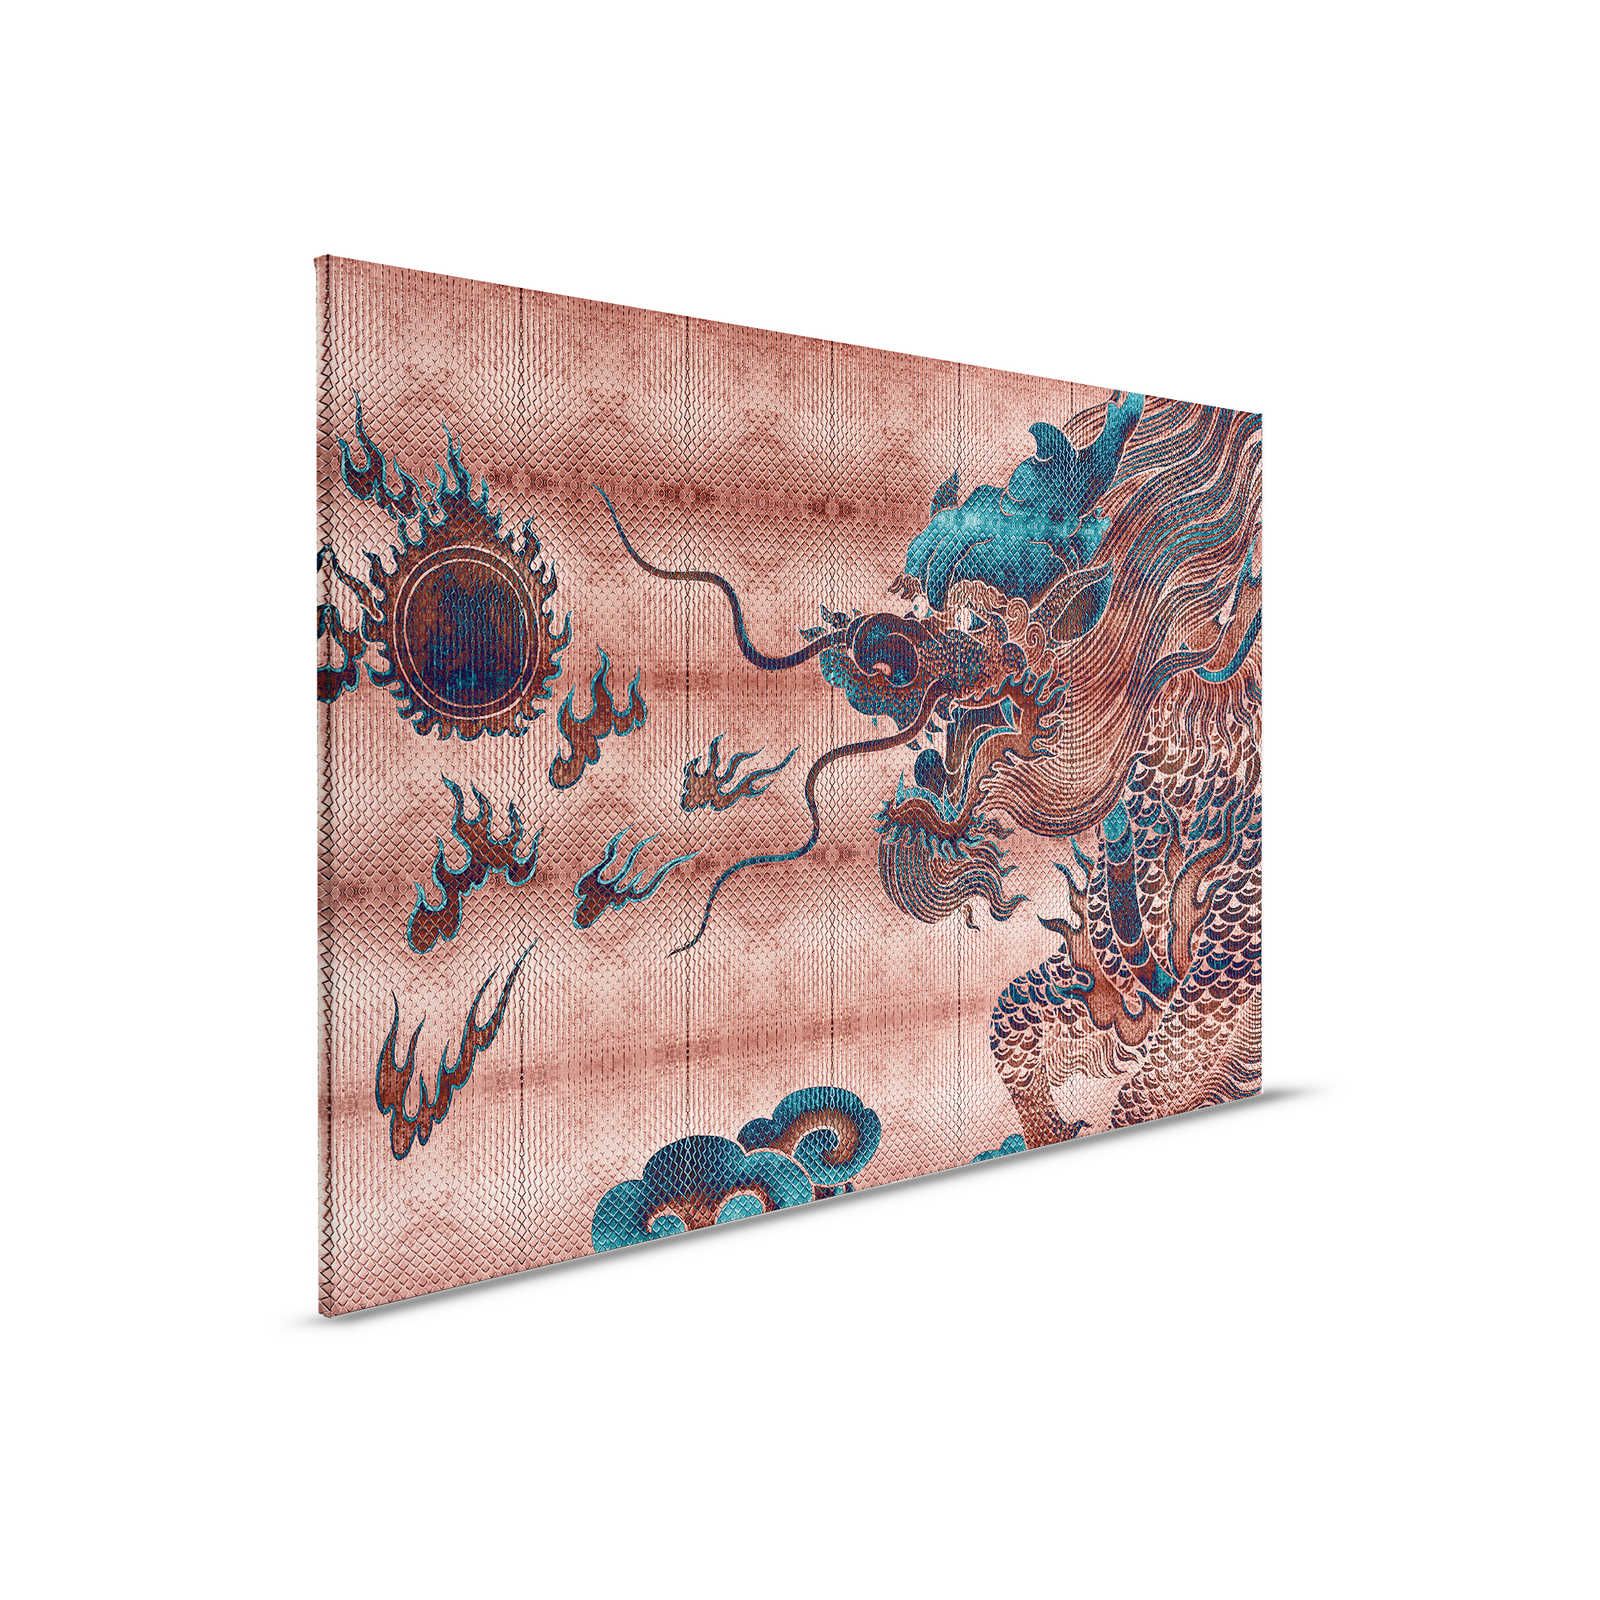 Shenzen 1 - Toile Dragon Asian Syle avec couleurs métalliques - 0,90 m x 0,60 m
